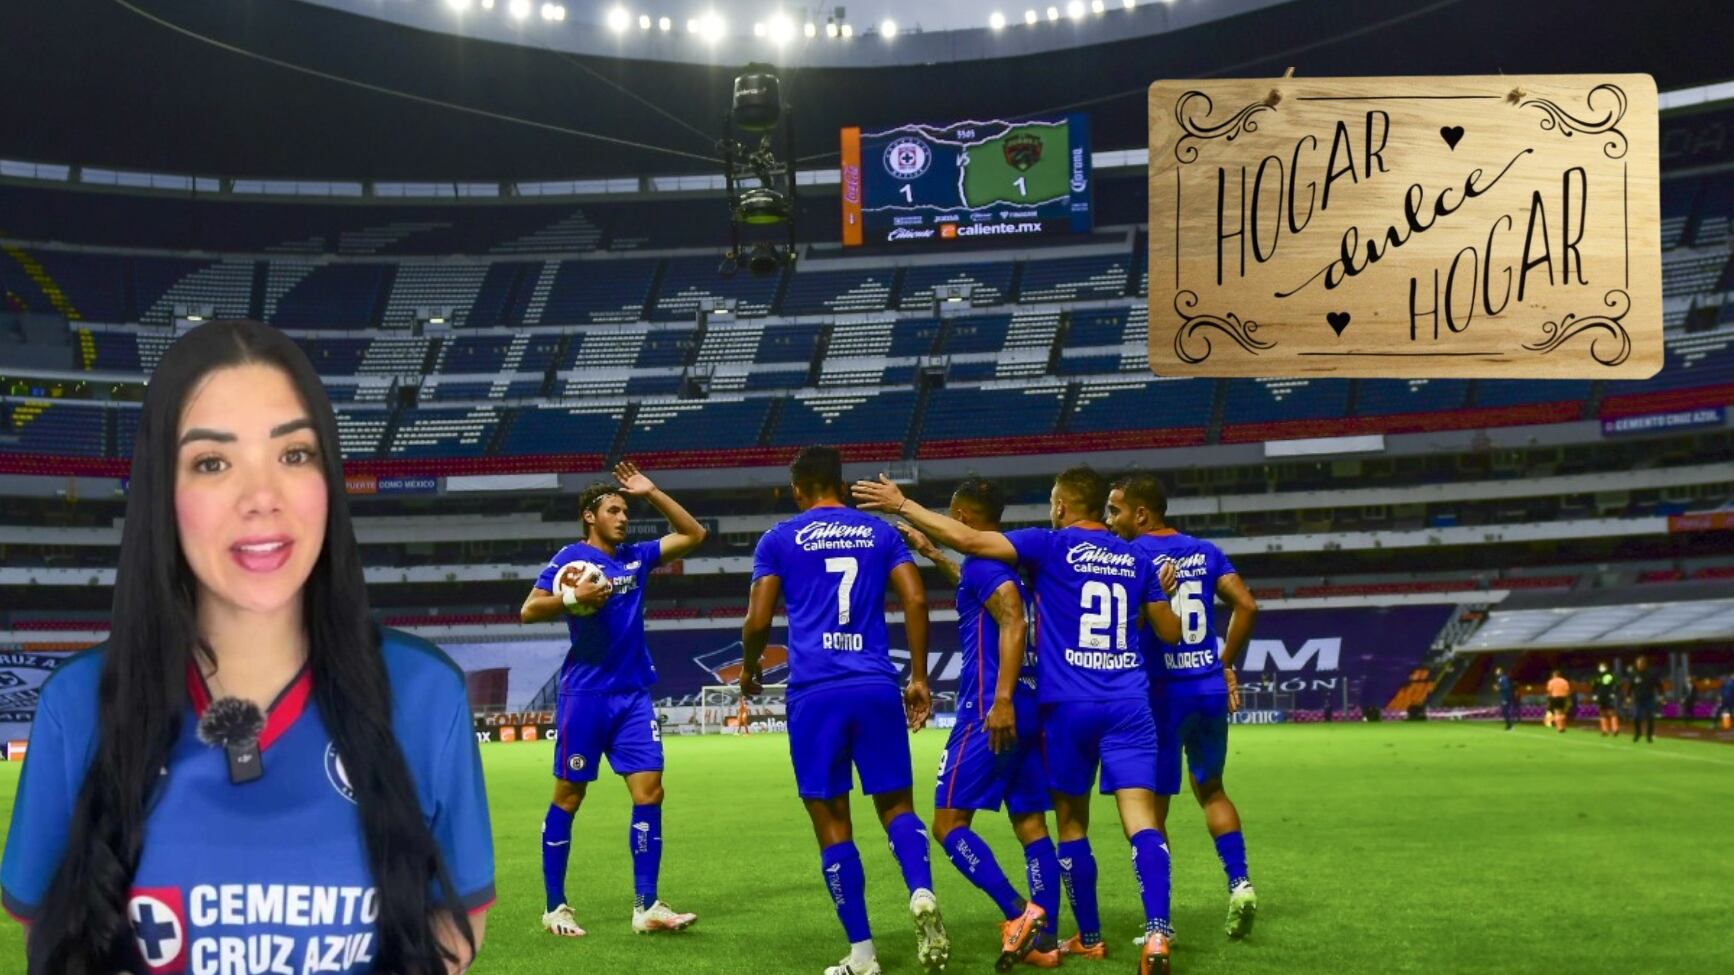 (VIDEO) Cruz Azul vuelve al Azteca, ¿cuántos partidos jugará en el ‘Coloso’?